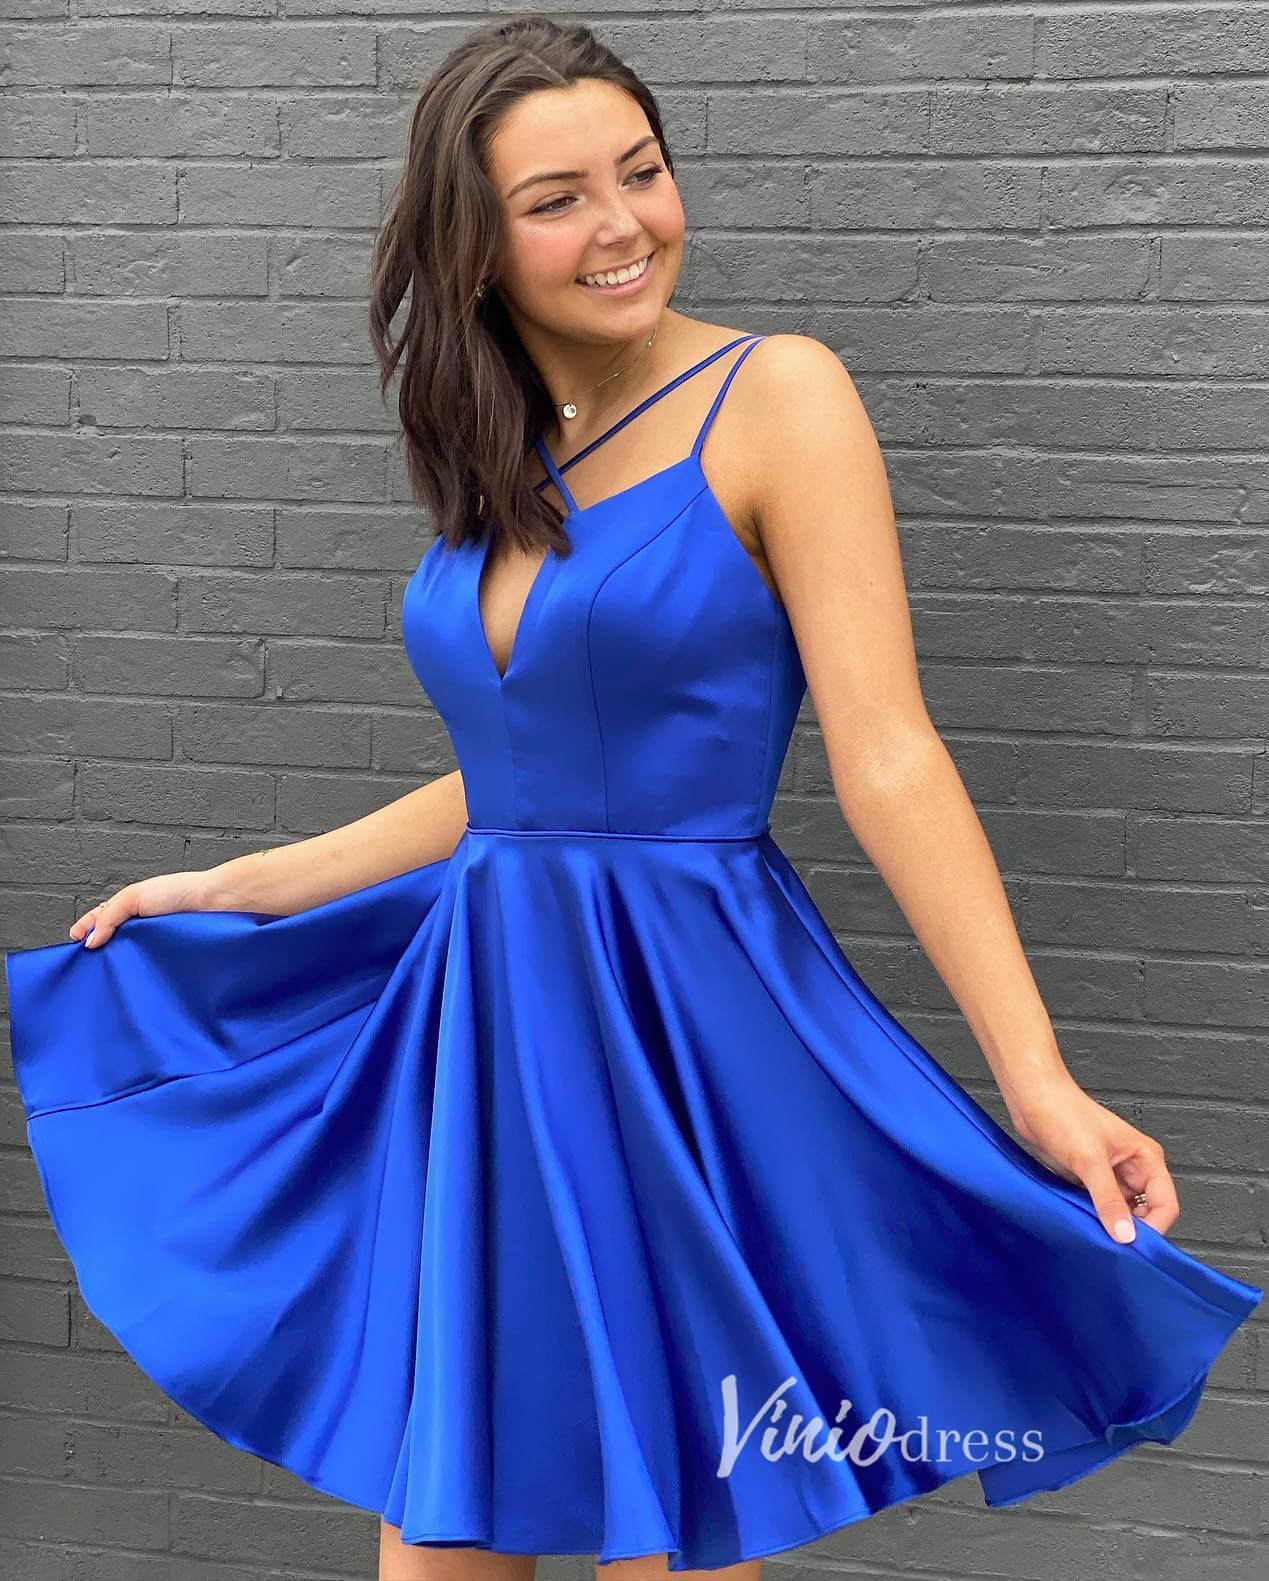 royal blue short dress